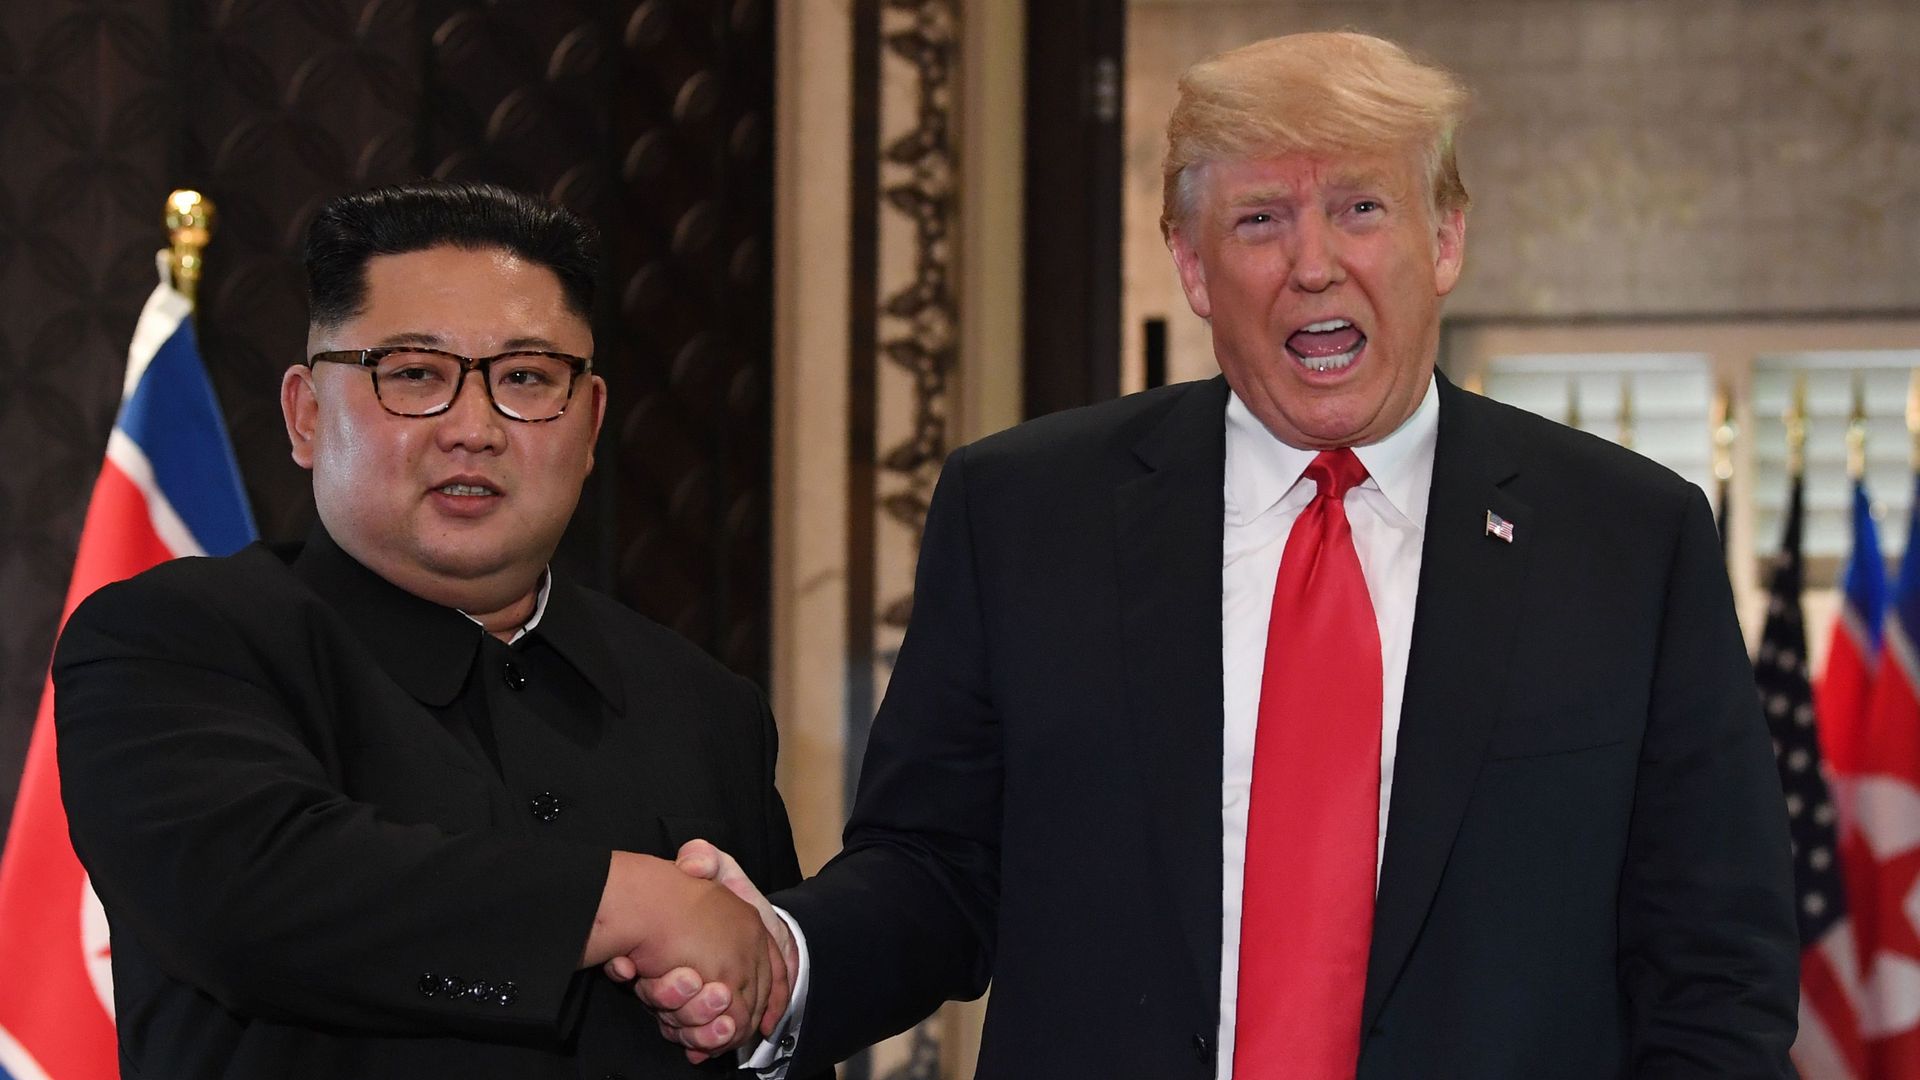 Trump and Kim shake hands